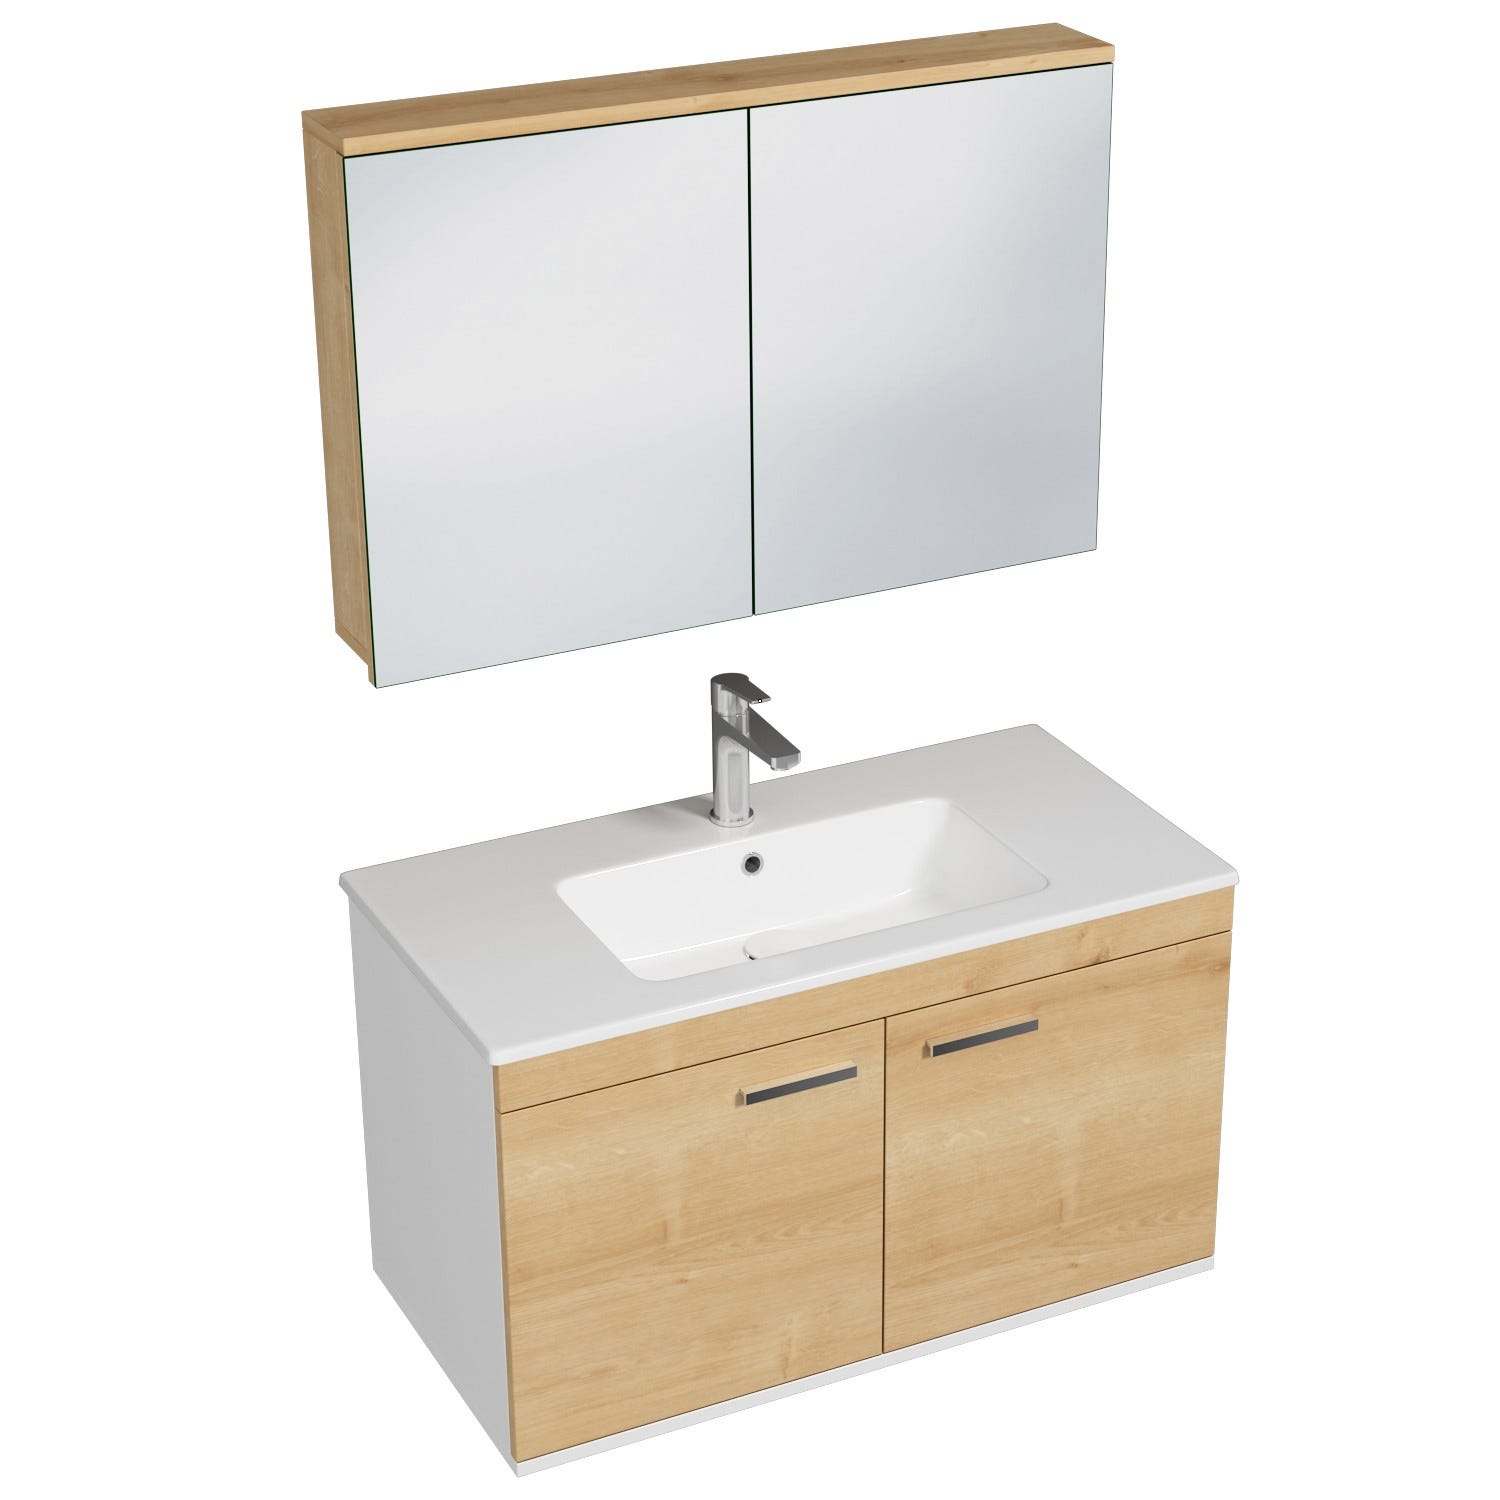 RUBITE Meuble salle de bain simple vasque 2 portes chêne clair largeur 90 cm + miroir armoire 0